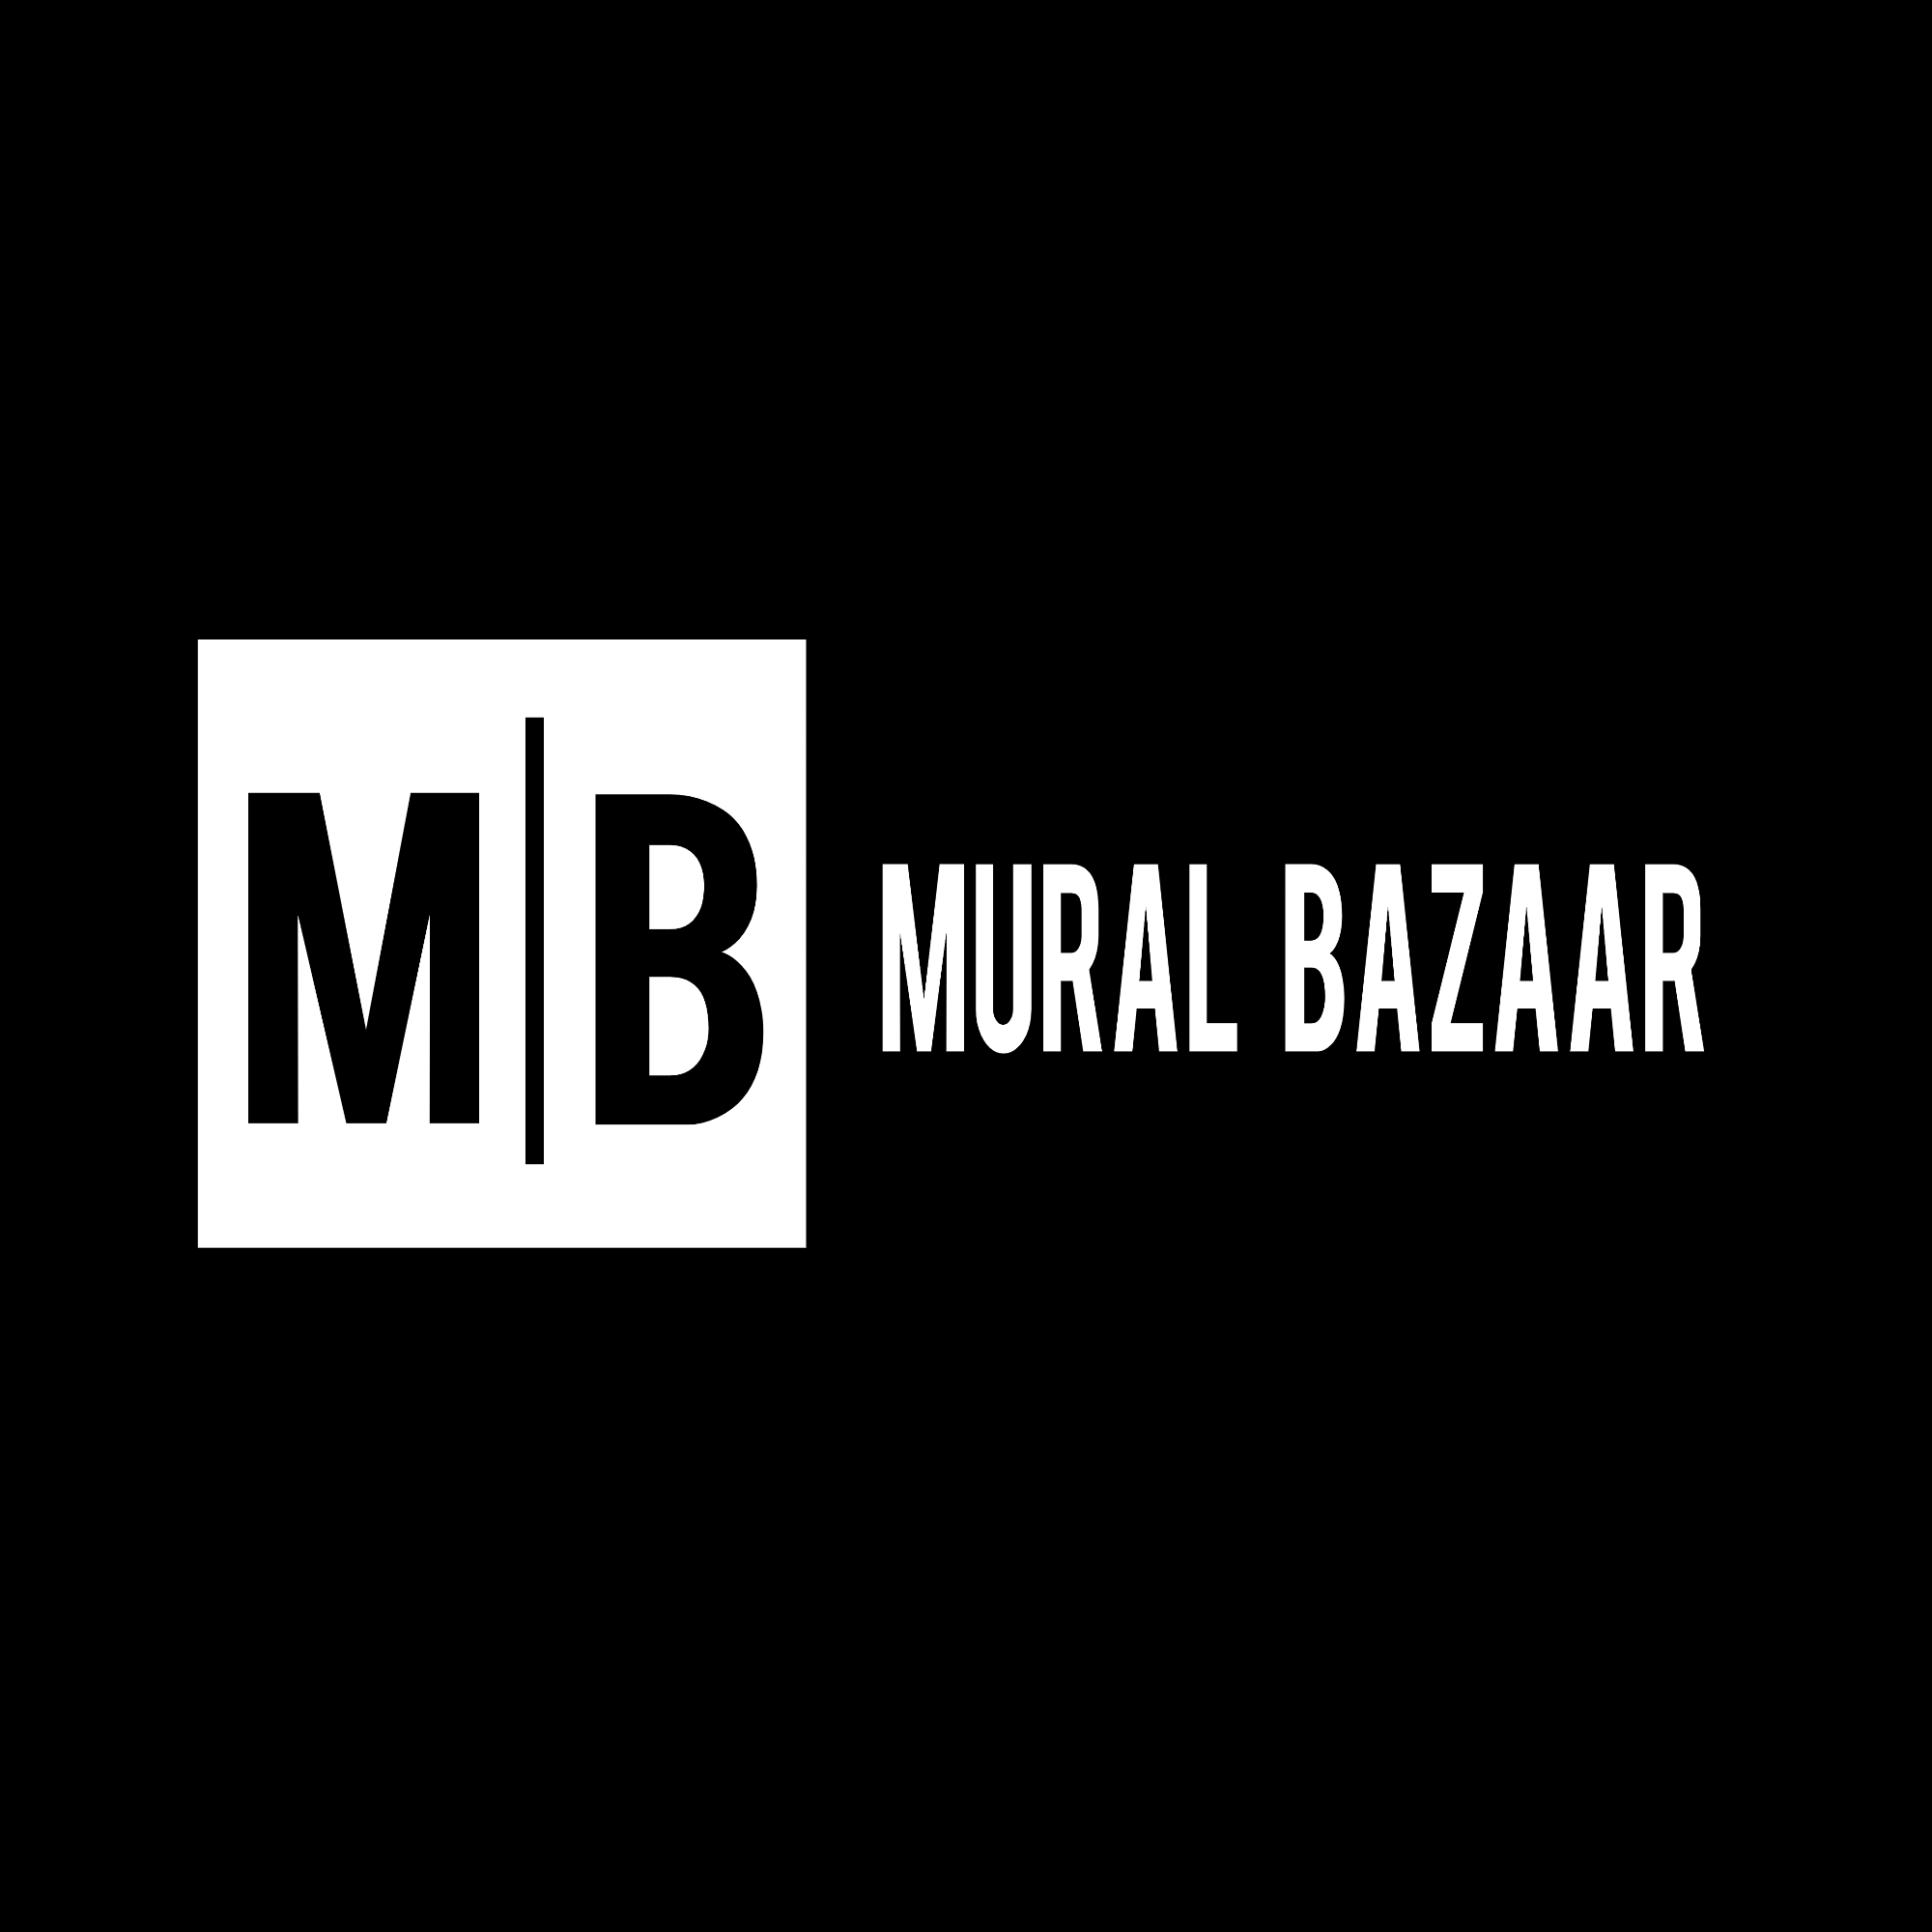 Mural Bazaar Logo